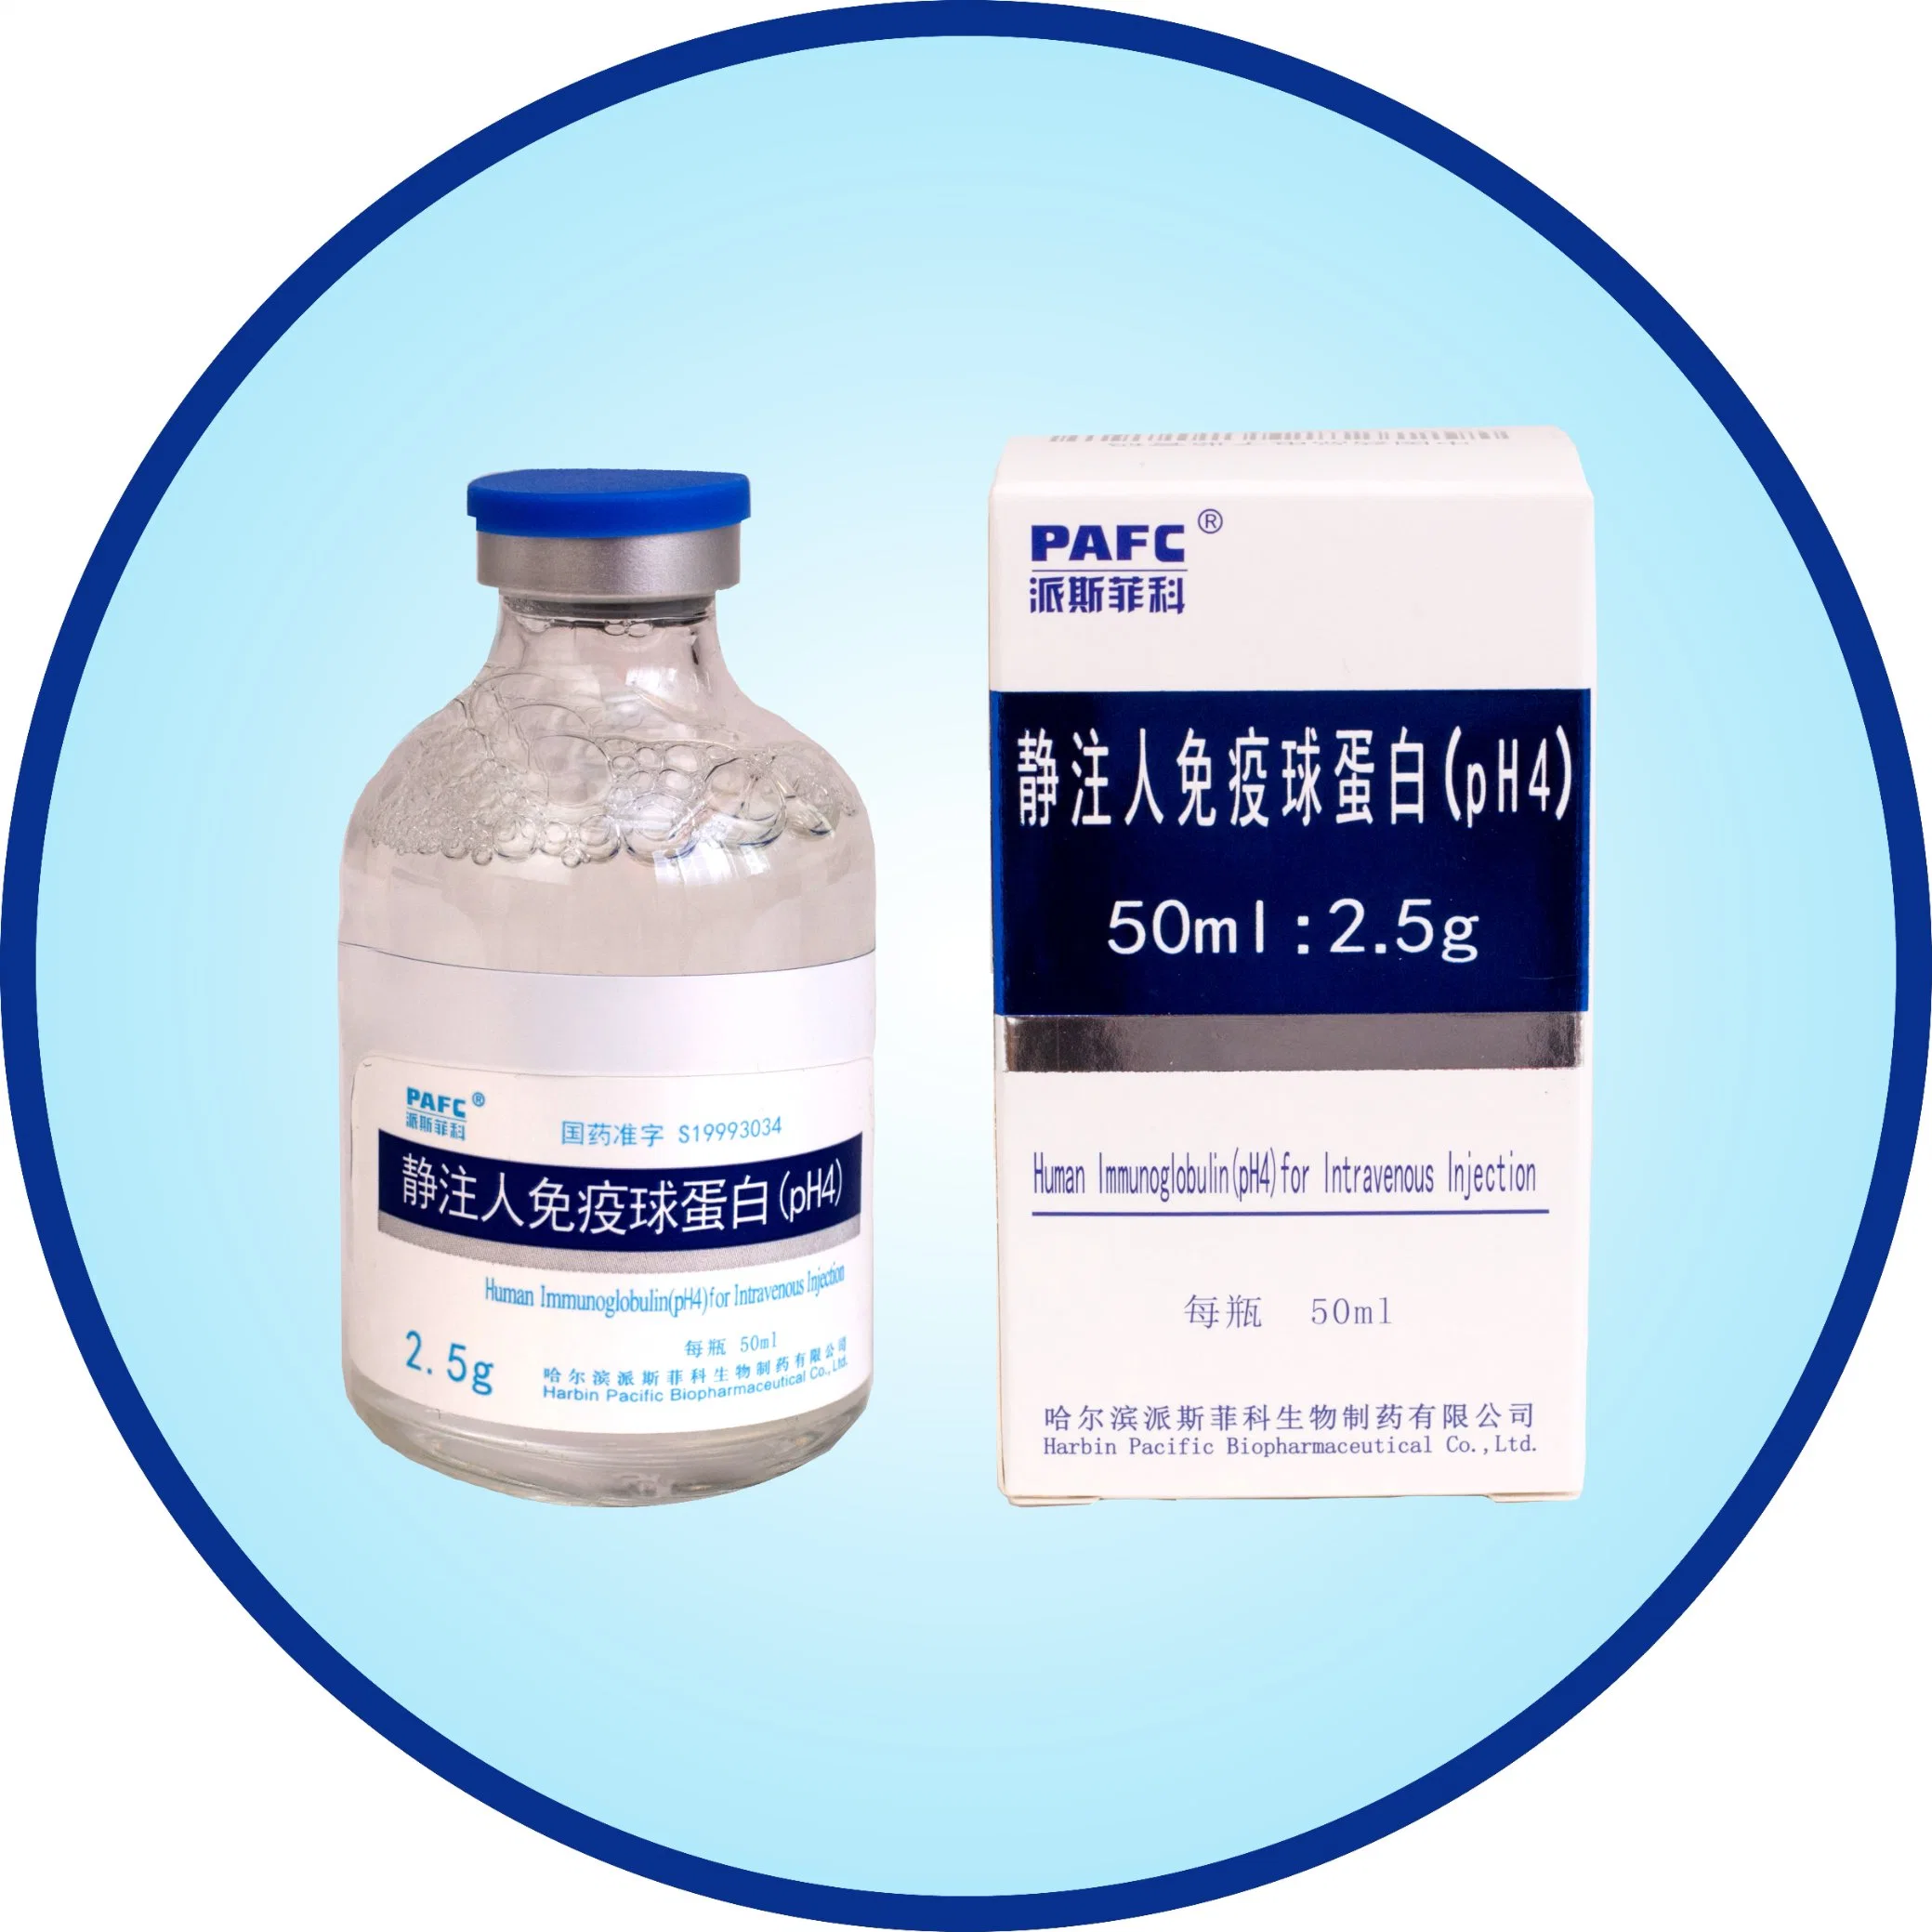 Producto biológico de la inmunoglobulina humana (pH4) para la inmunidad Injection-Improving intravenosa